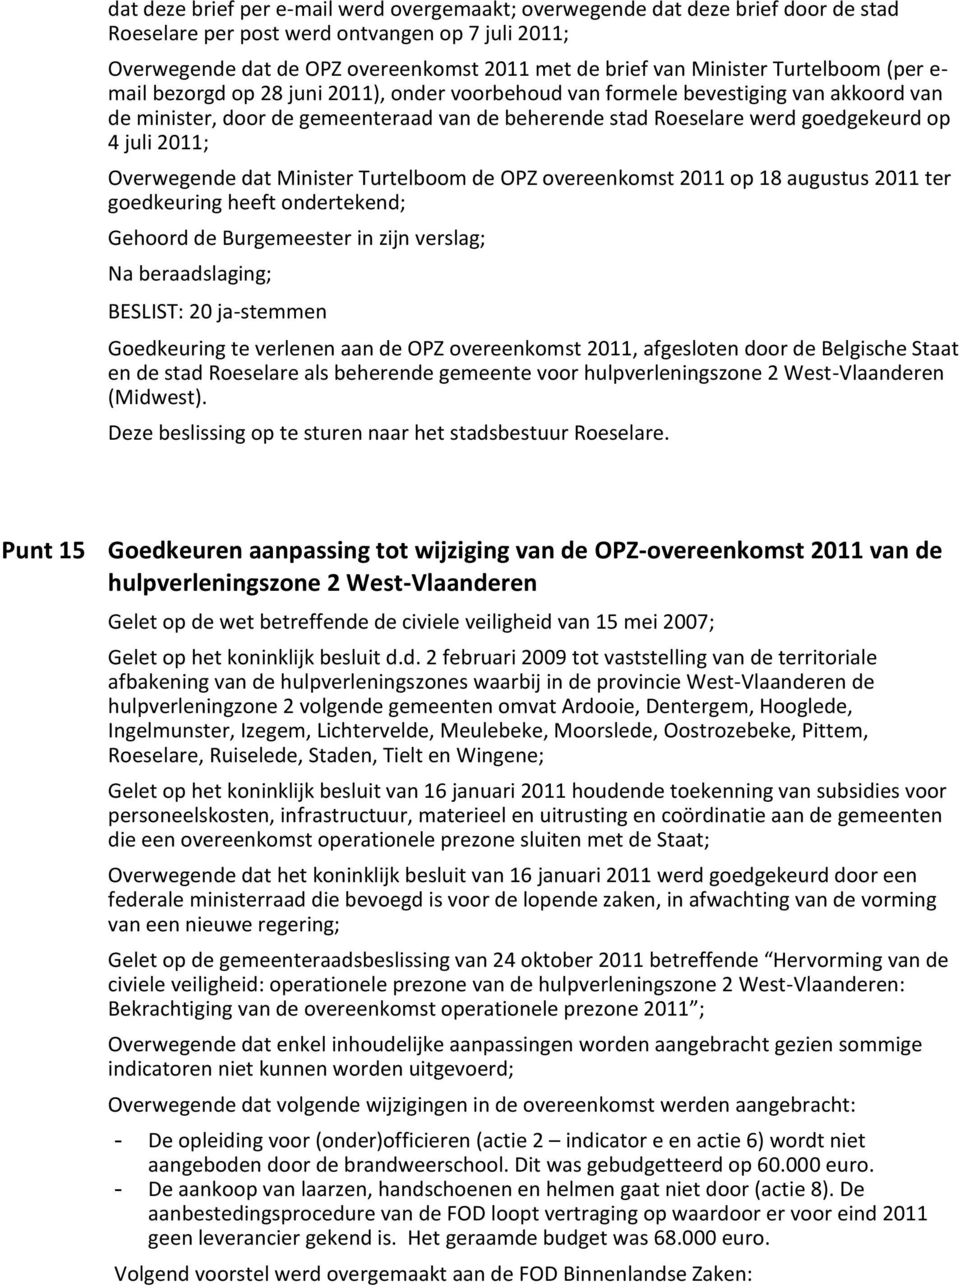 op 4 juli 2011; Overwegende dat Minister Turtelboom de OPZ overeenkomst 2011 op 18 augustus 2011 ter goedkeuring heeft ondertekend; Gehoord de Burgemeester in zijn verslag; Na beraadslaging; BESLIST: